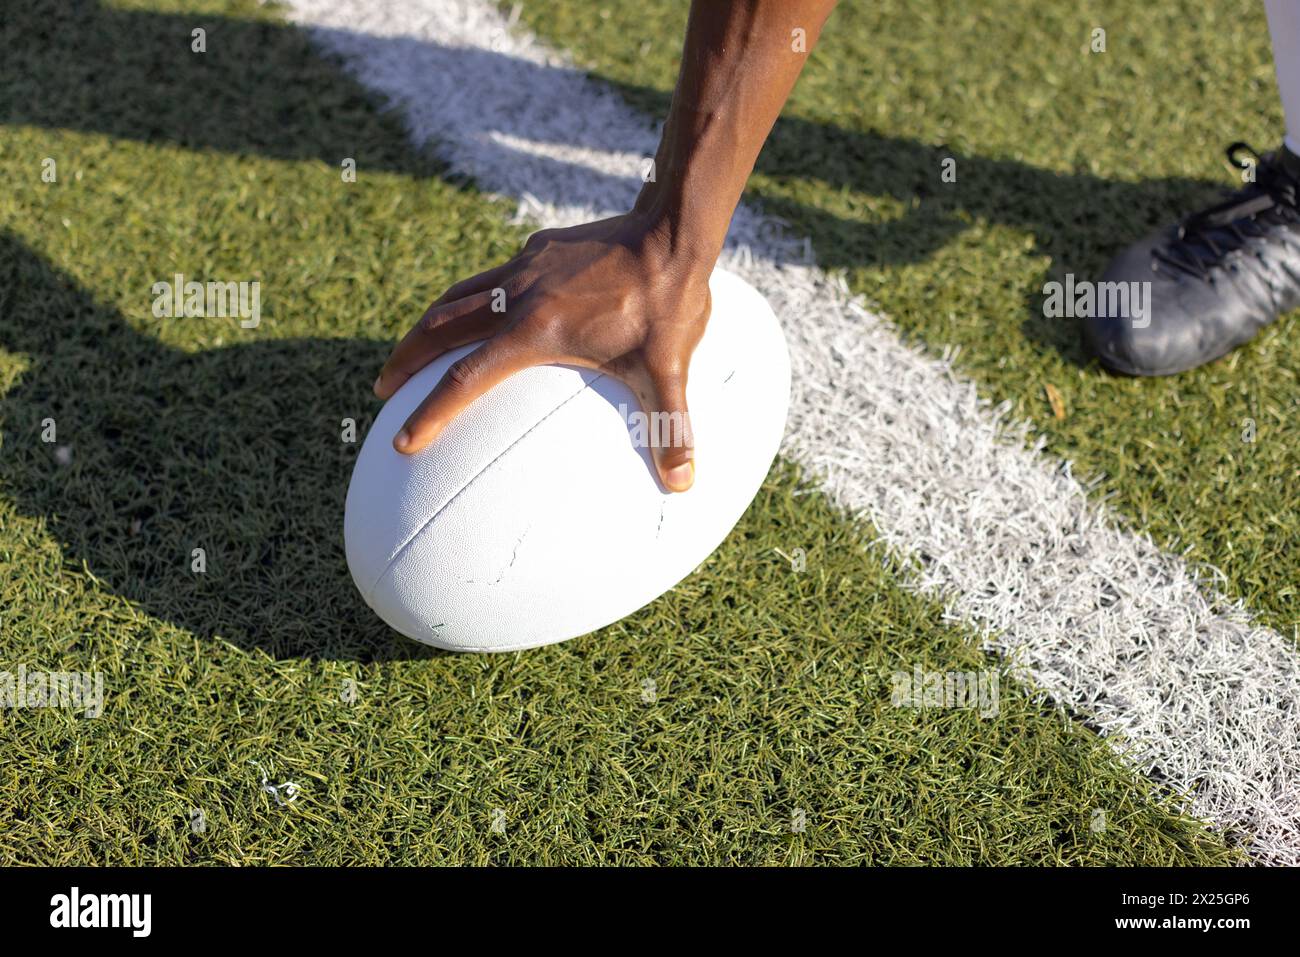 Jeune athlète afro-américain portant des crampons plaçant la main sur un ballon de rugby sur un terrain en herbe Banque D'Images